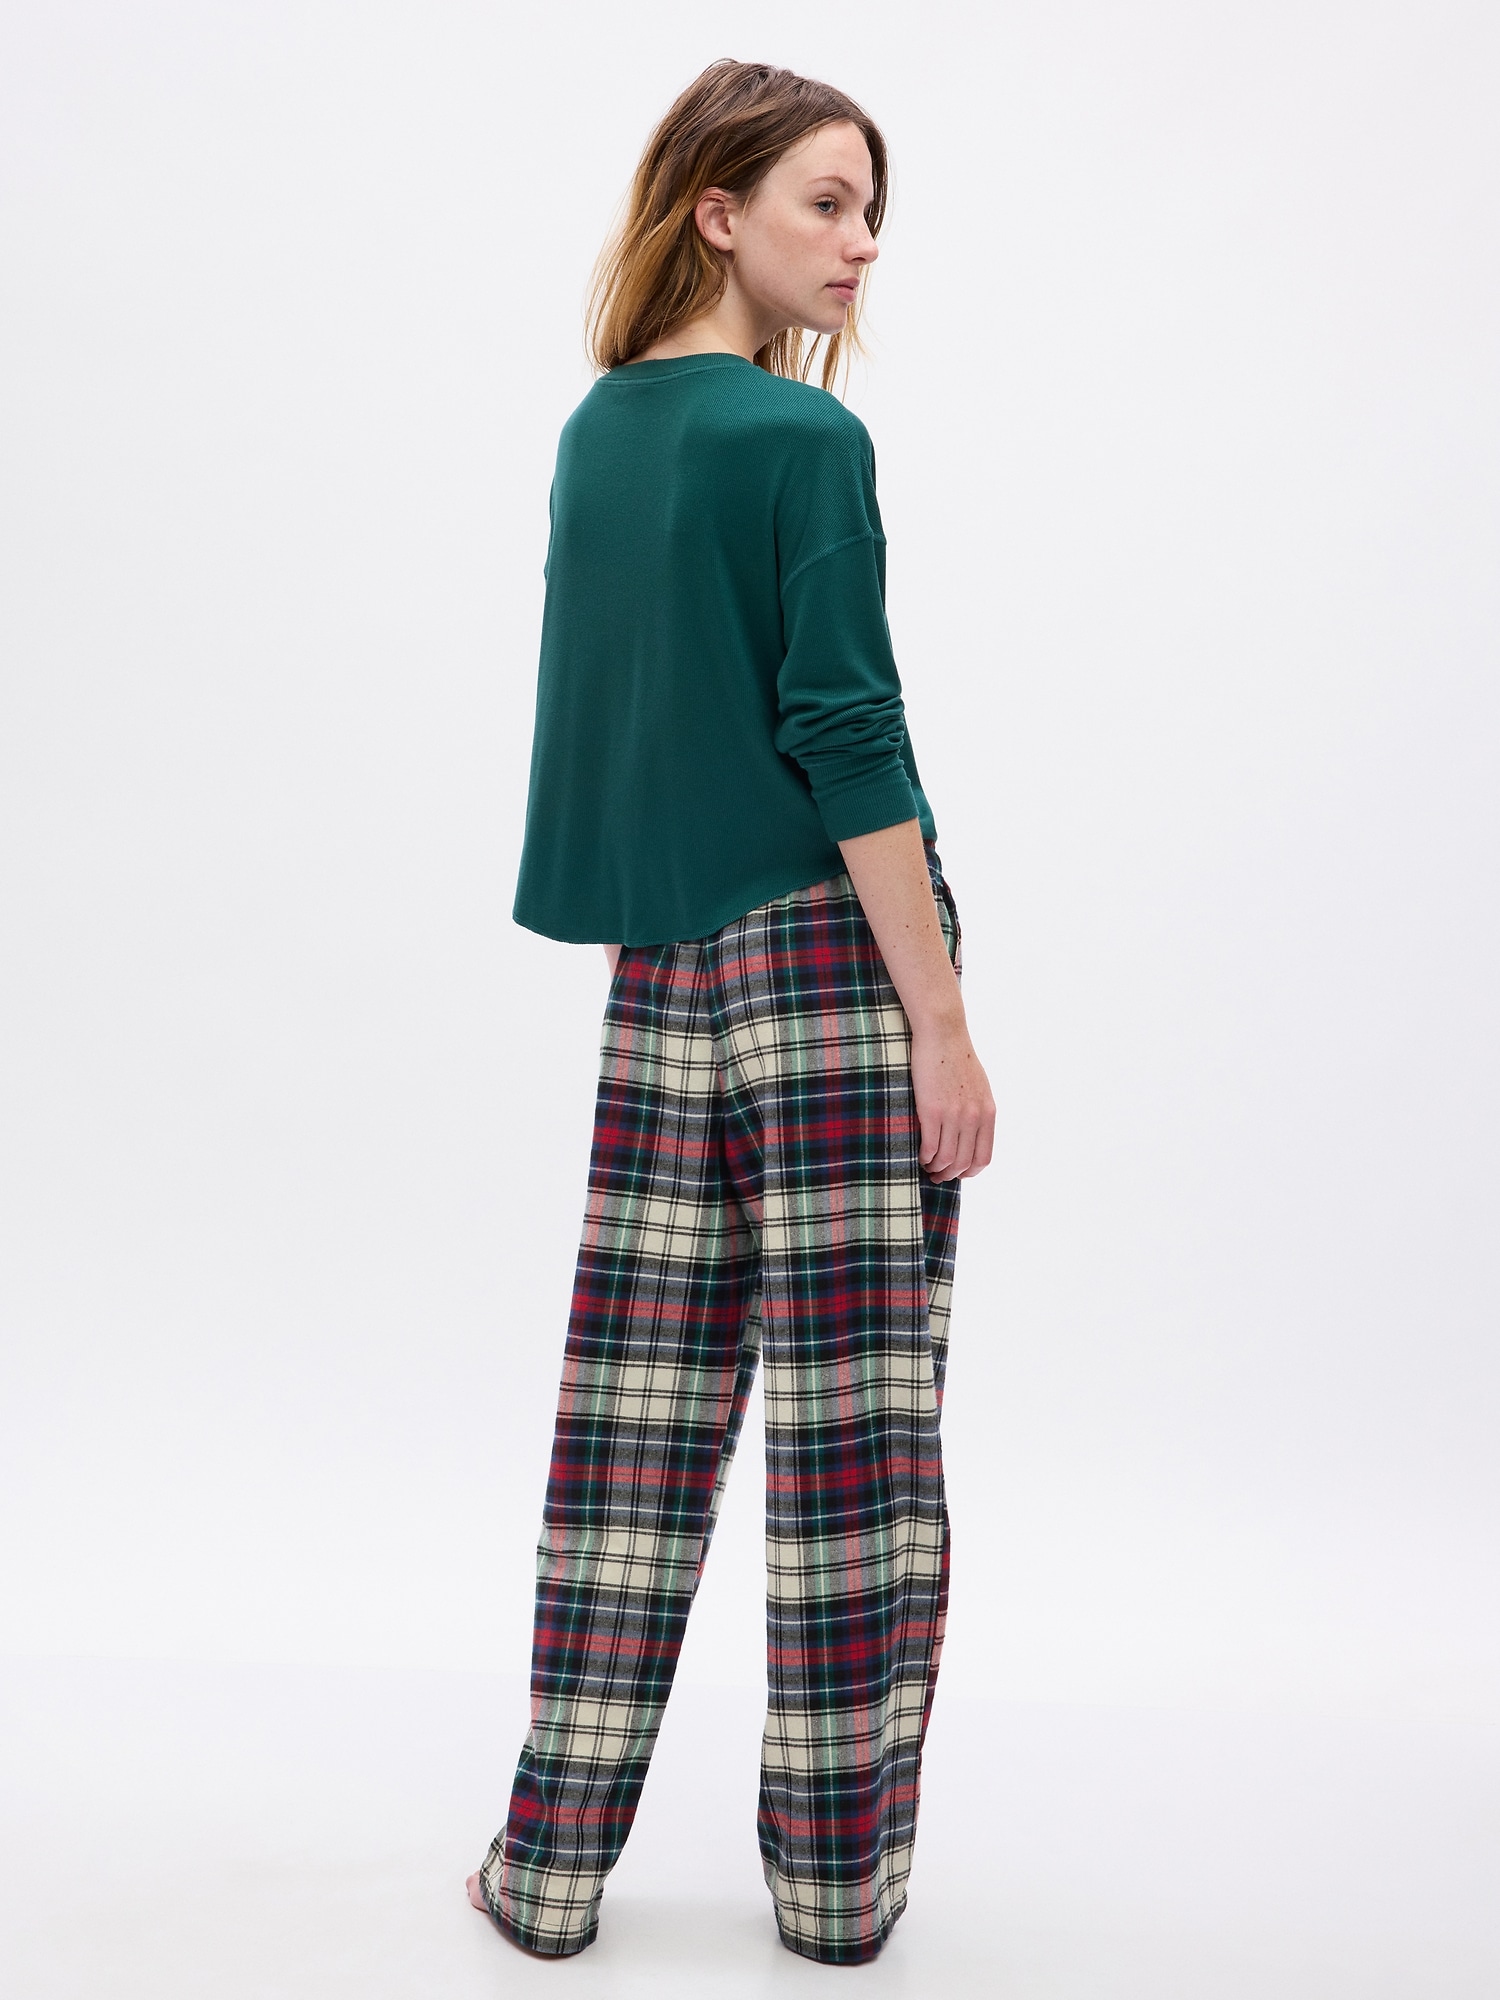 Best 25+ Deals for Plaid Pajama Pants